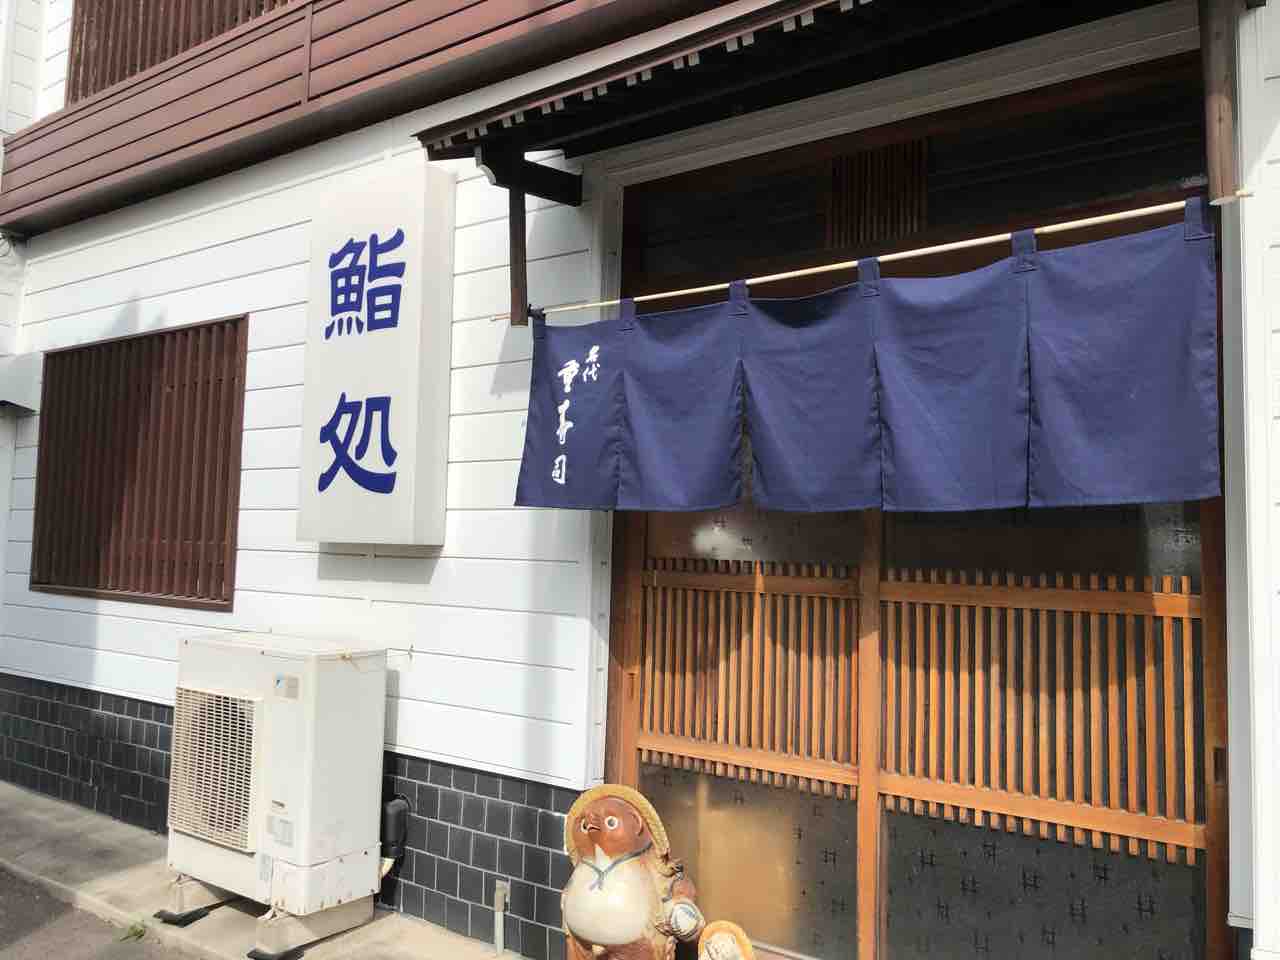 『名代 重寿司』店舗入口